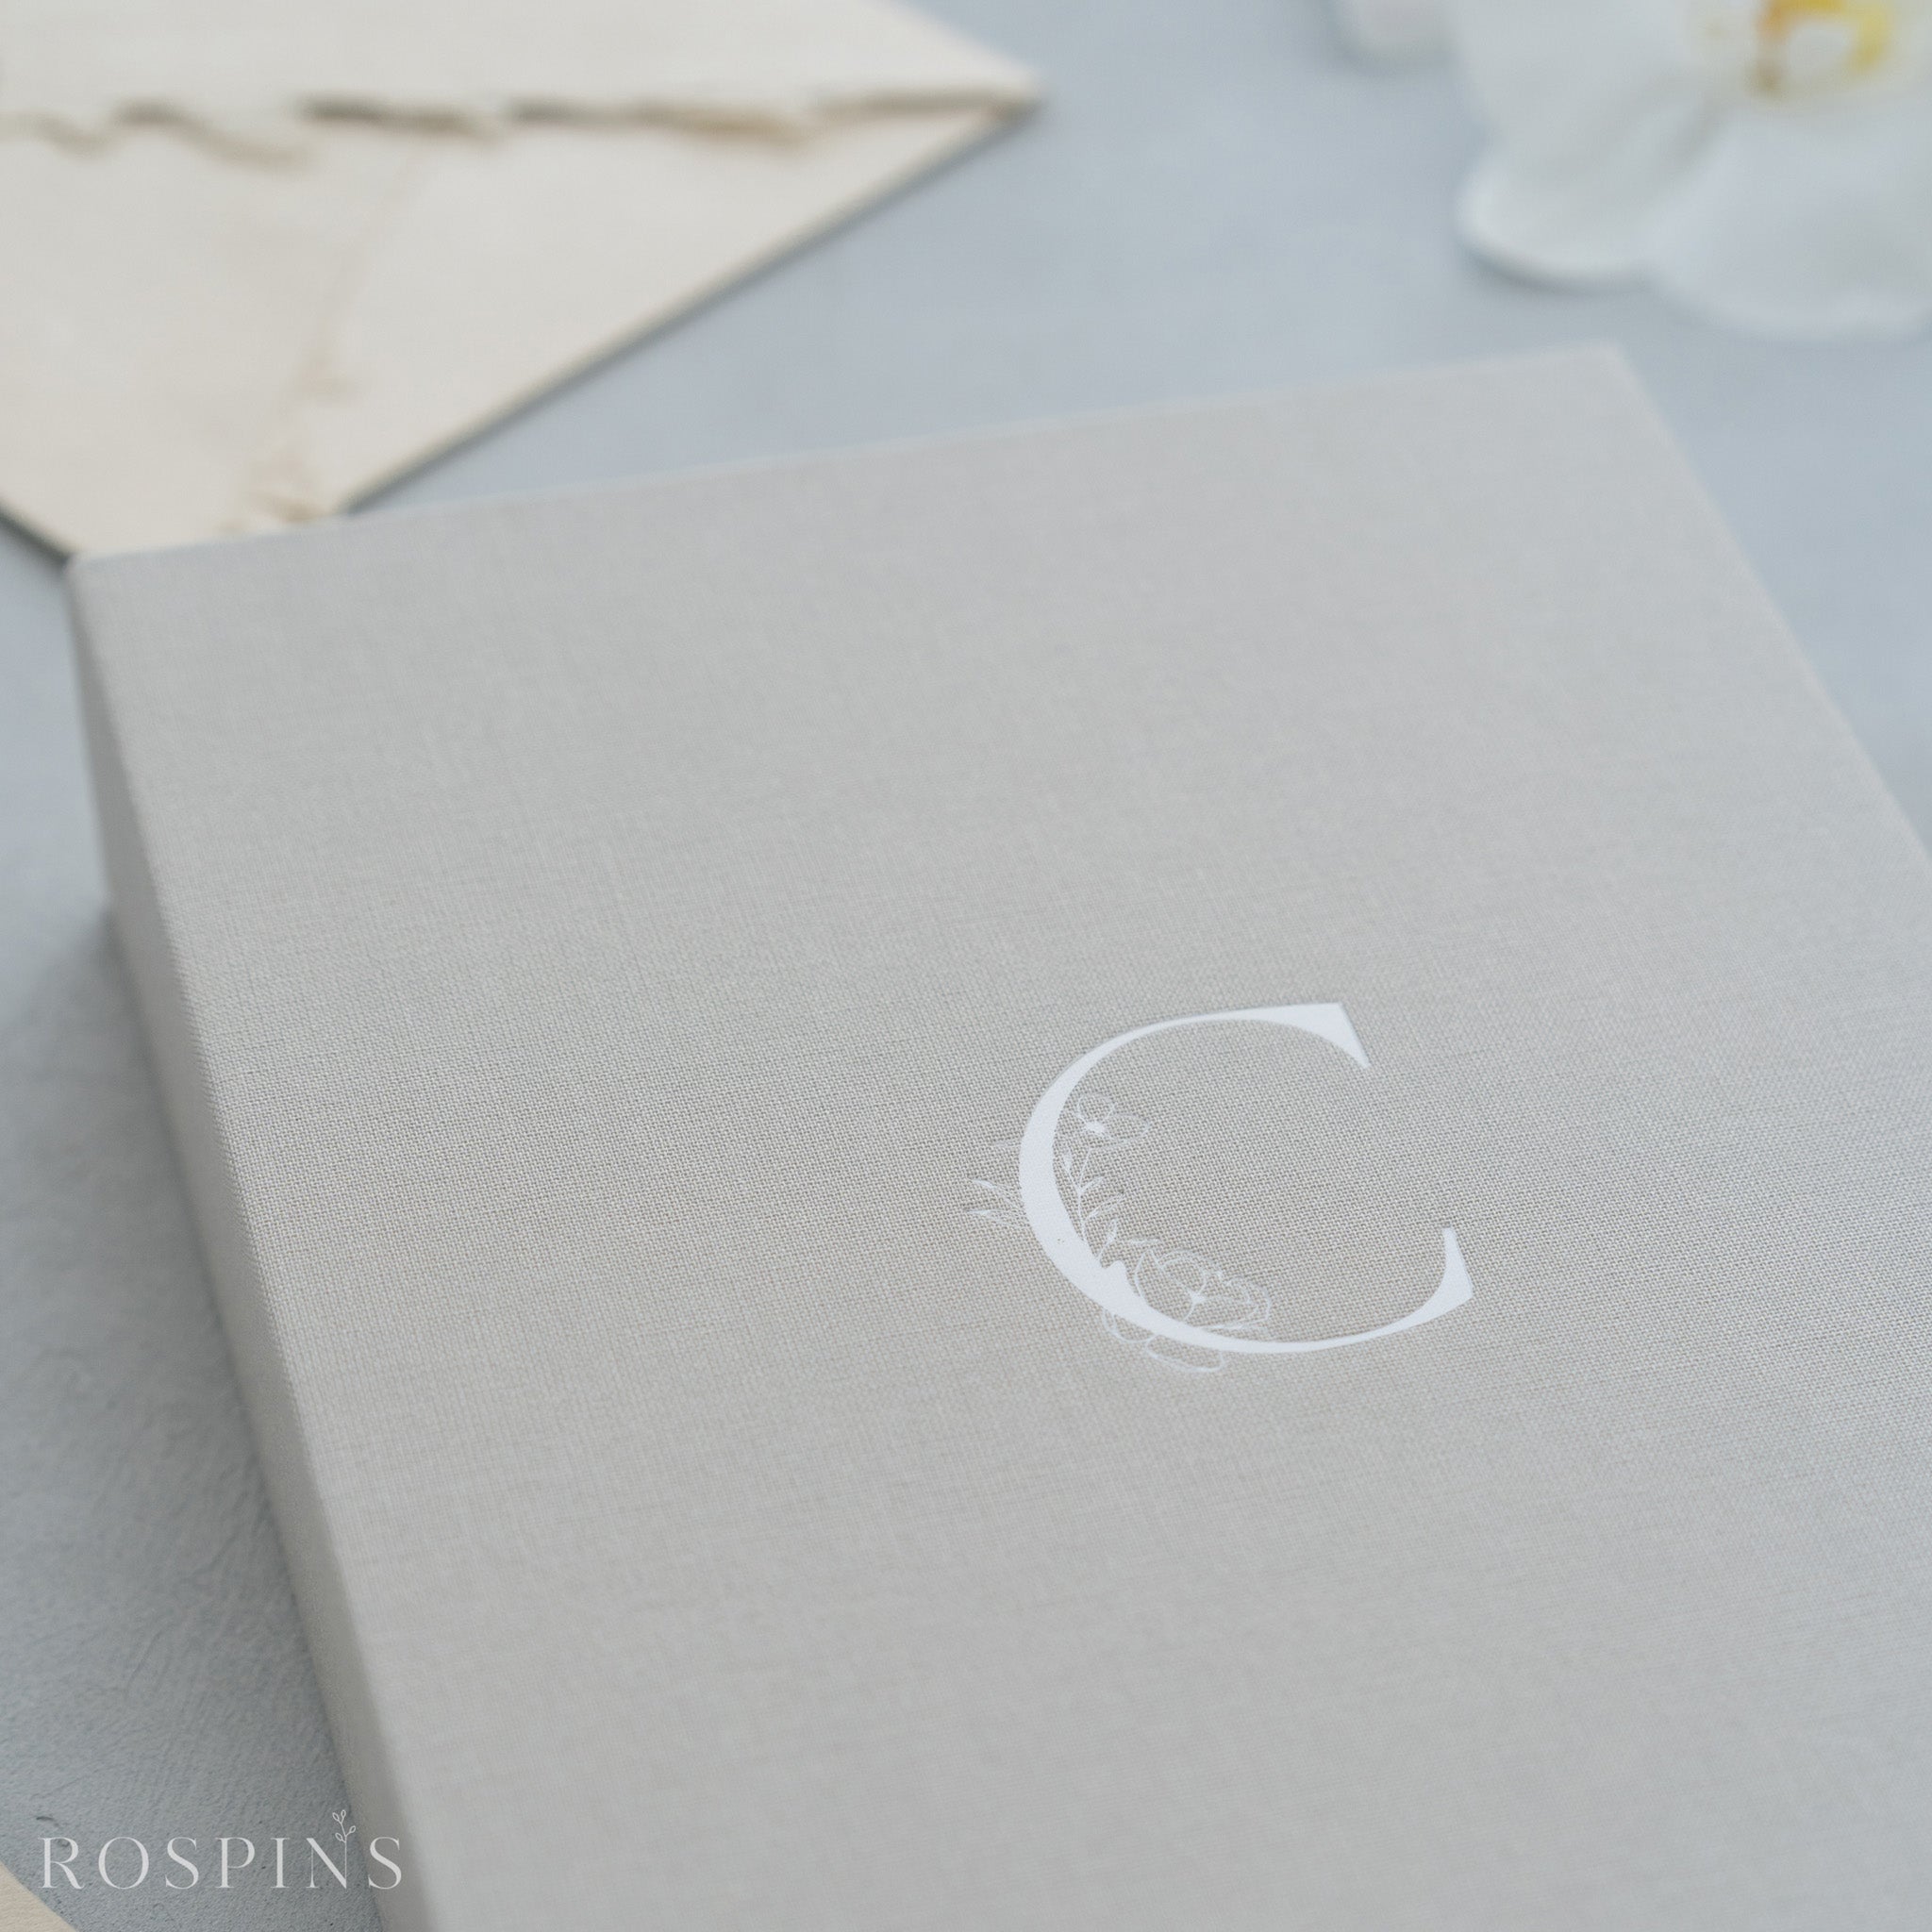 Linen Invitation Box - Light Grey